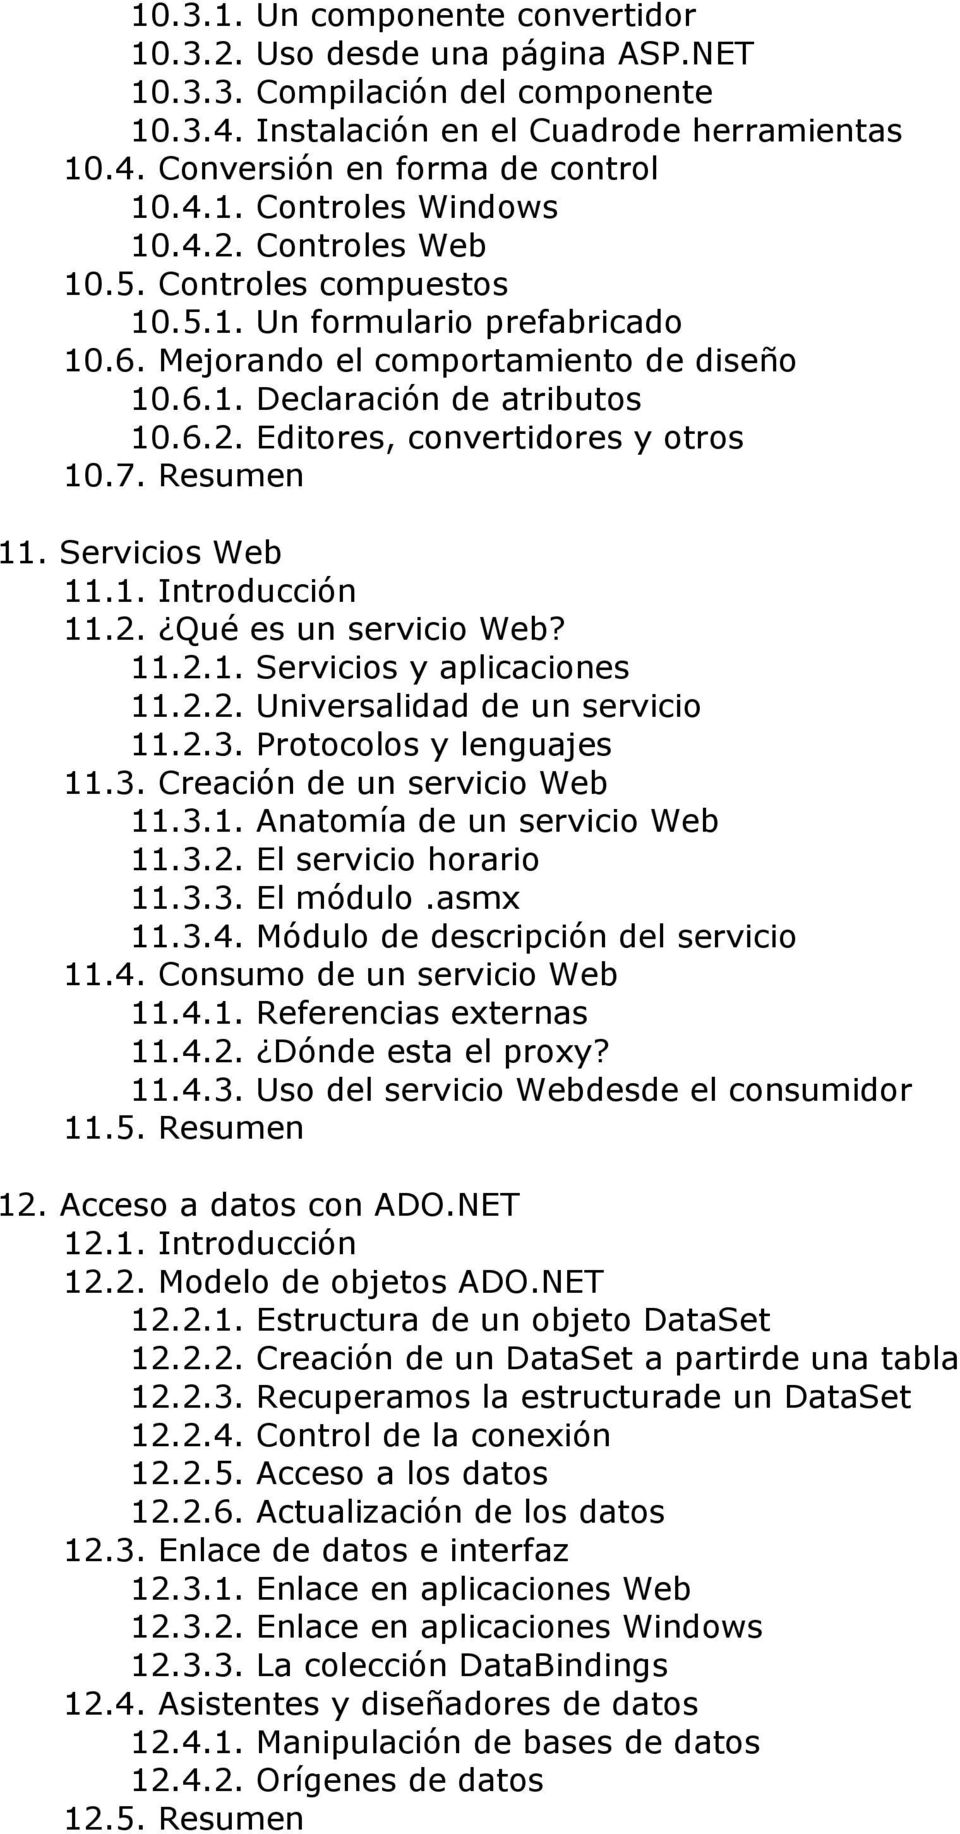 7. Resumen 11. Servicios Web 11.1. Introducción 11.2. Qué es un servicio Web? 11.2.1. Servicios y aplicaciones 11.2.2. Universalidad de un servicio 11.2.3. Protocolos y lenguajes 11.3. Creación de un servicio Web 11.